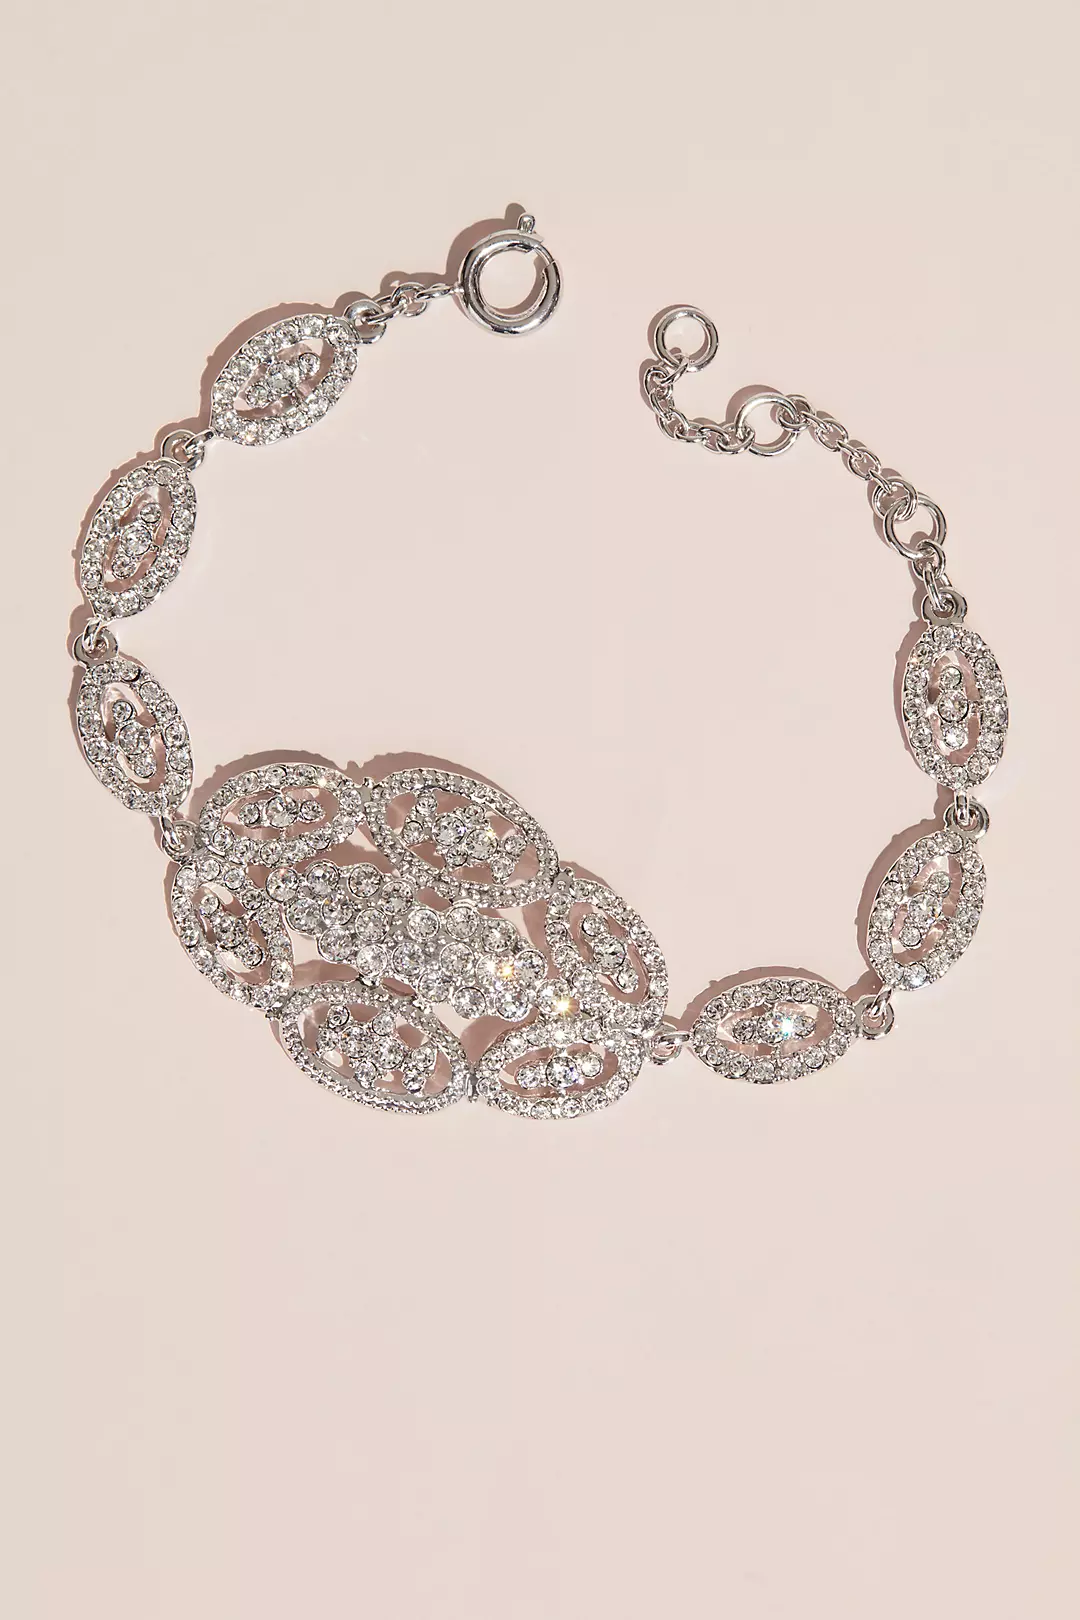 Swarovski Oval Cluster Crystal Link Bracelet Image